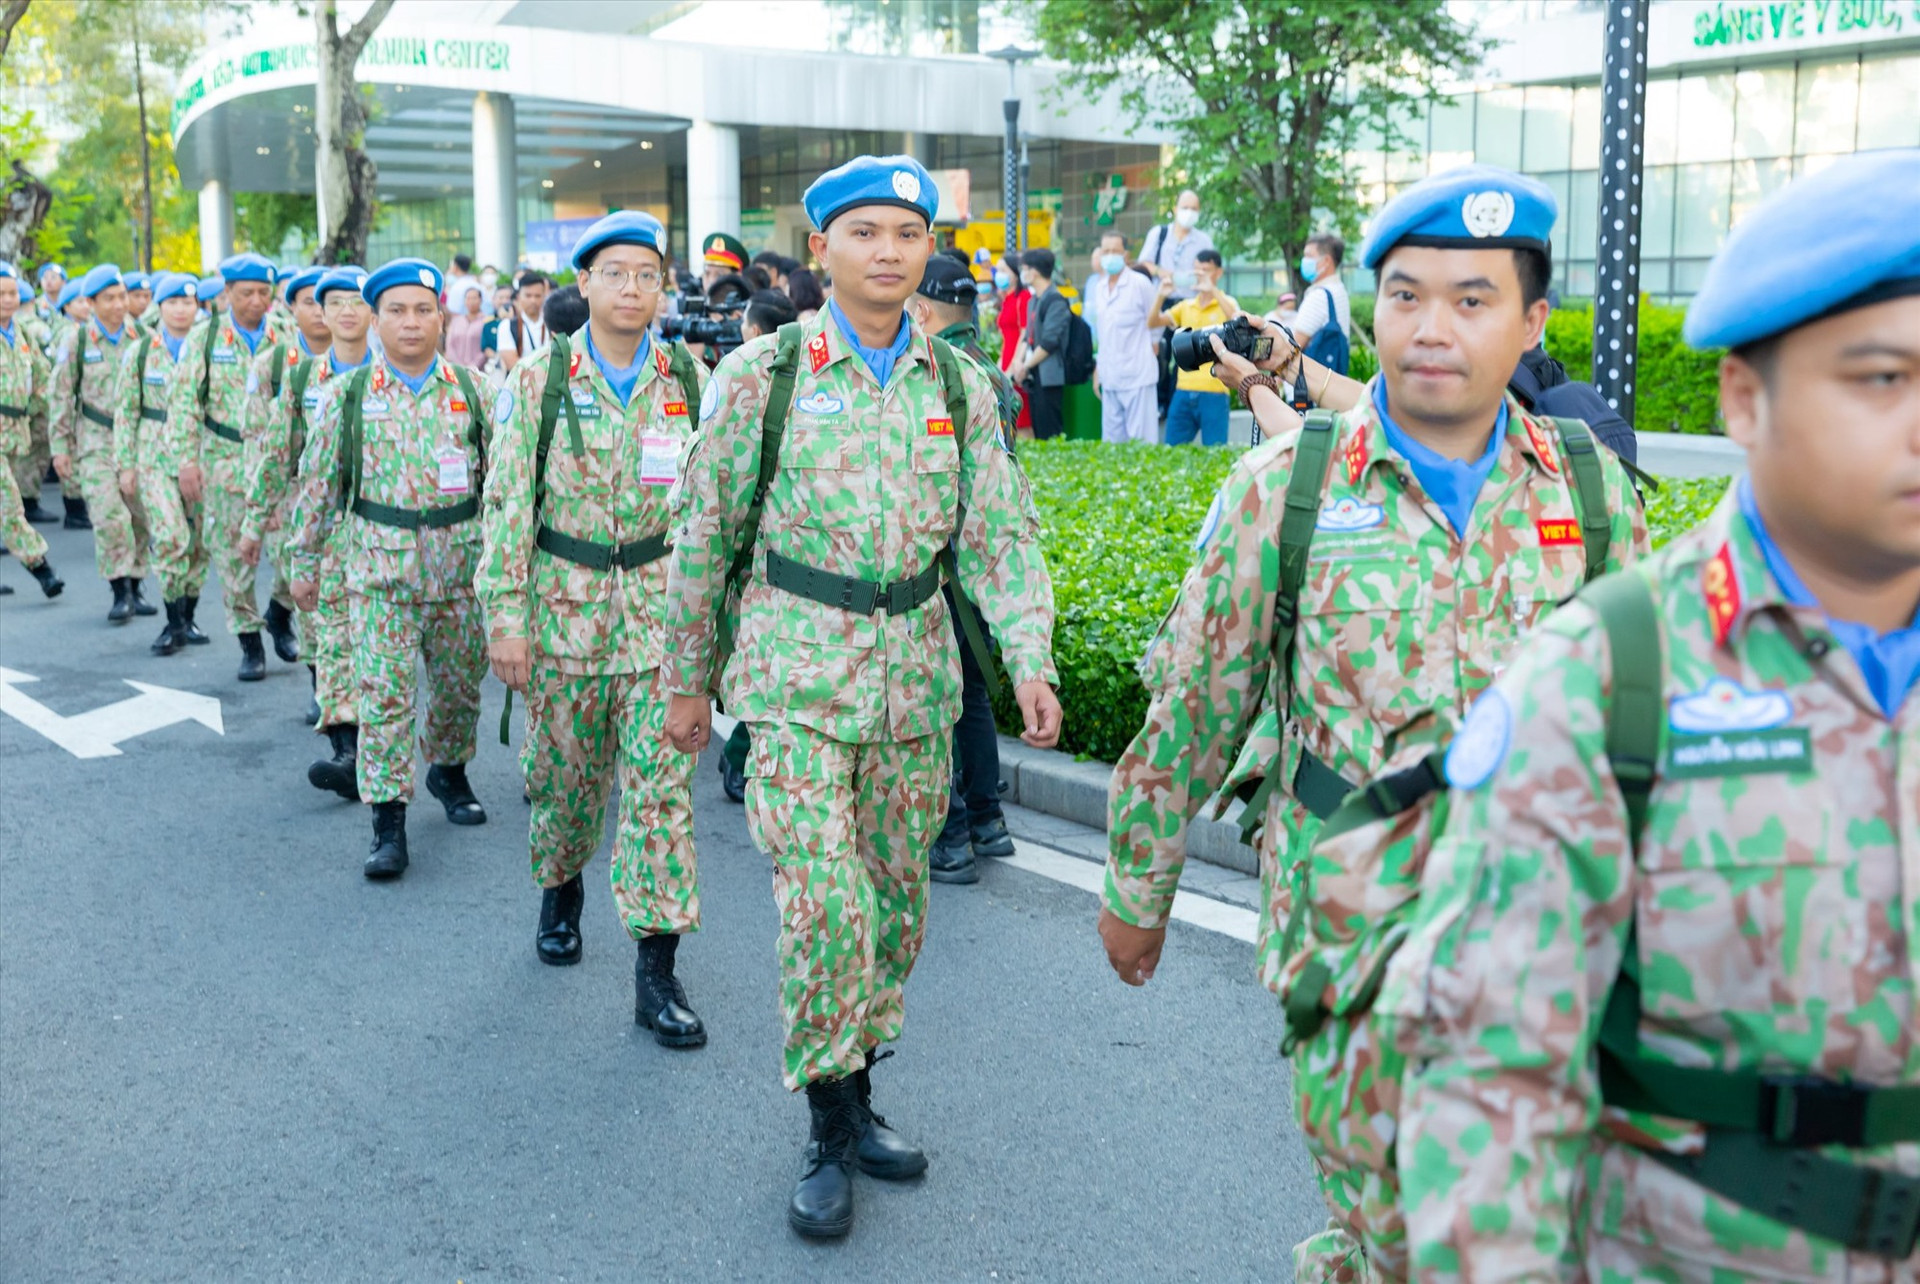 63 chiến sĩ mũ nồi xanh sẵn sàng đi làm nhiệm vụ gì giữ hòa bình. Ảnh: XUÂN KHÁNH